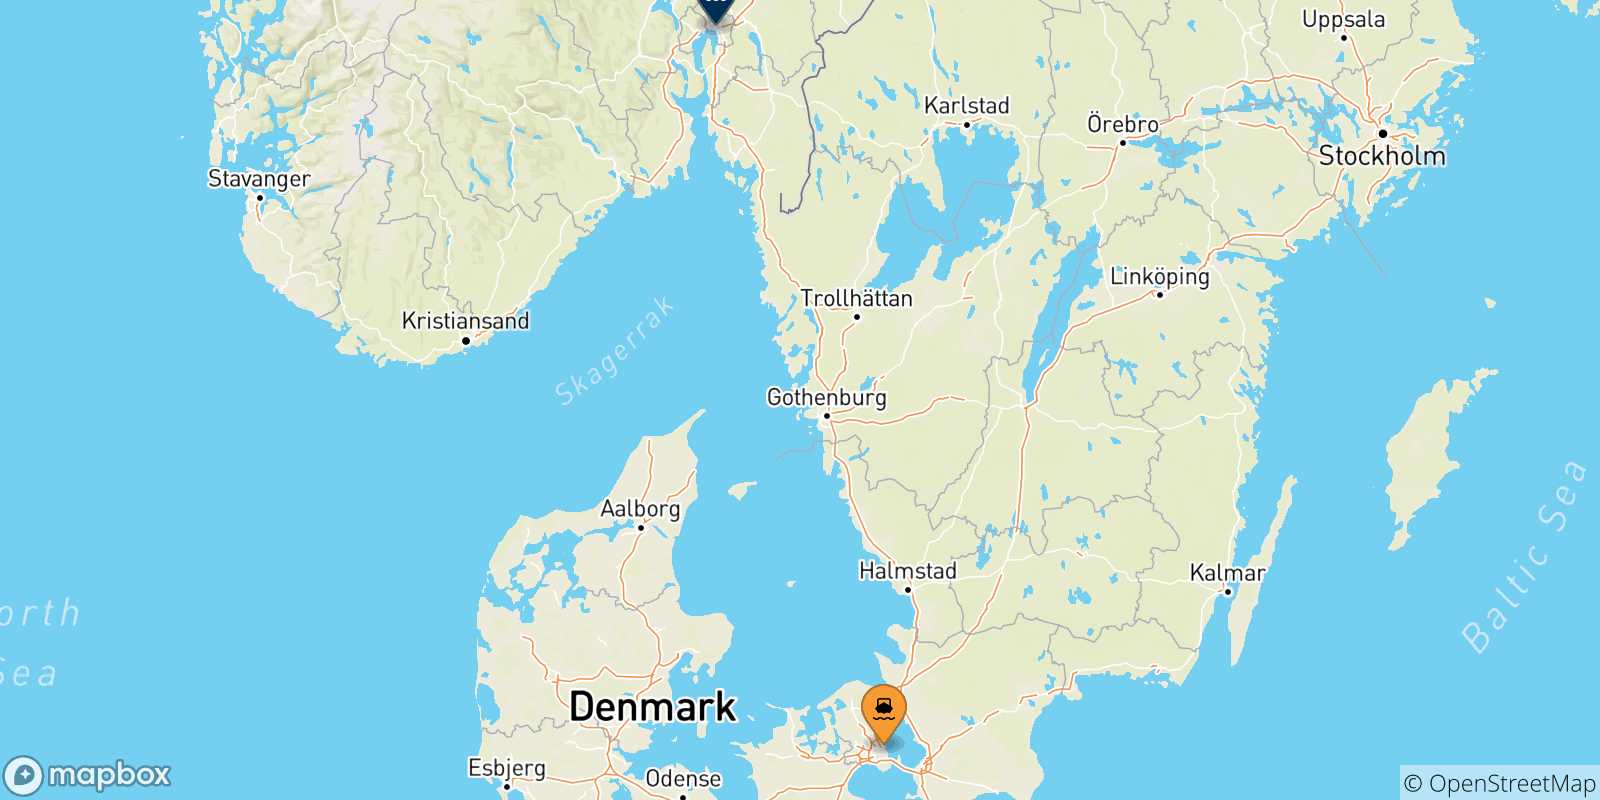 Mappa dei porti collegati con la Norvegia